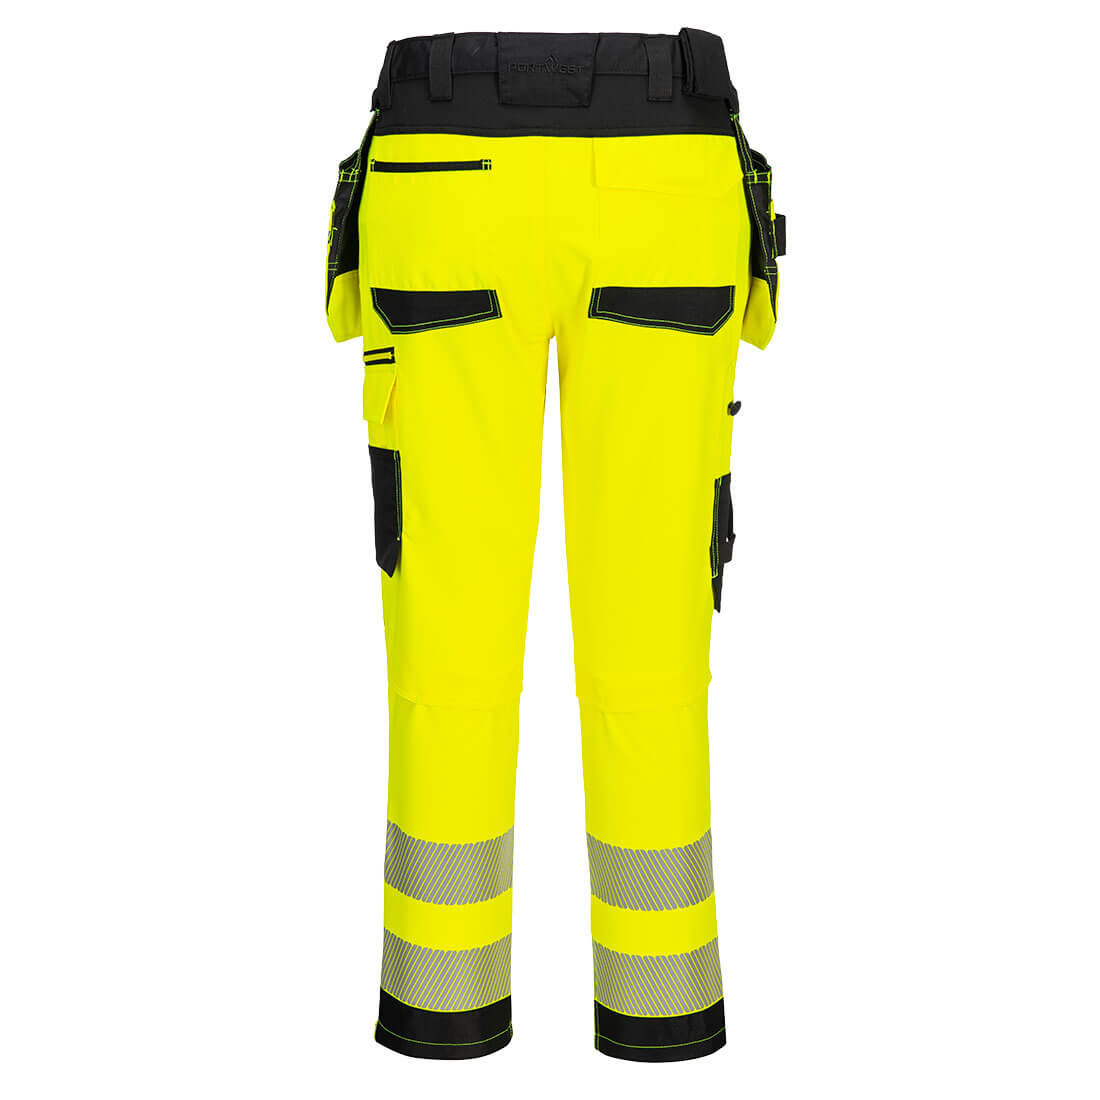 Pantalon Service haute visibilité DX4 - Les vêtements de protection